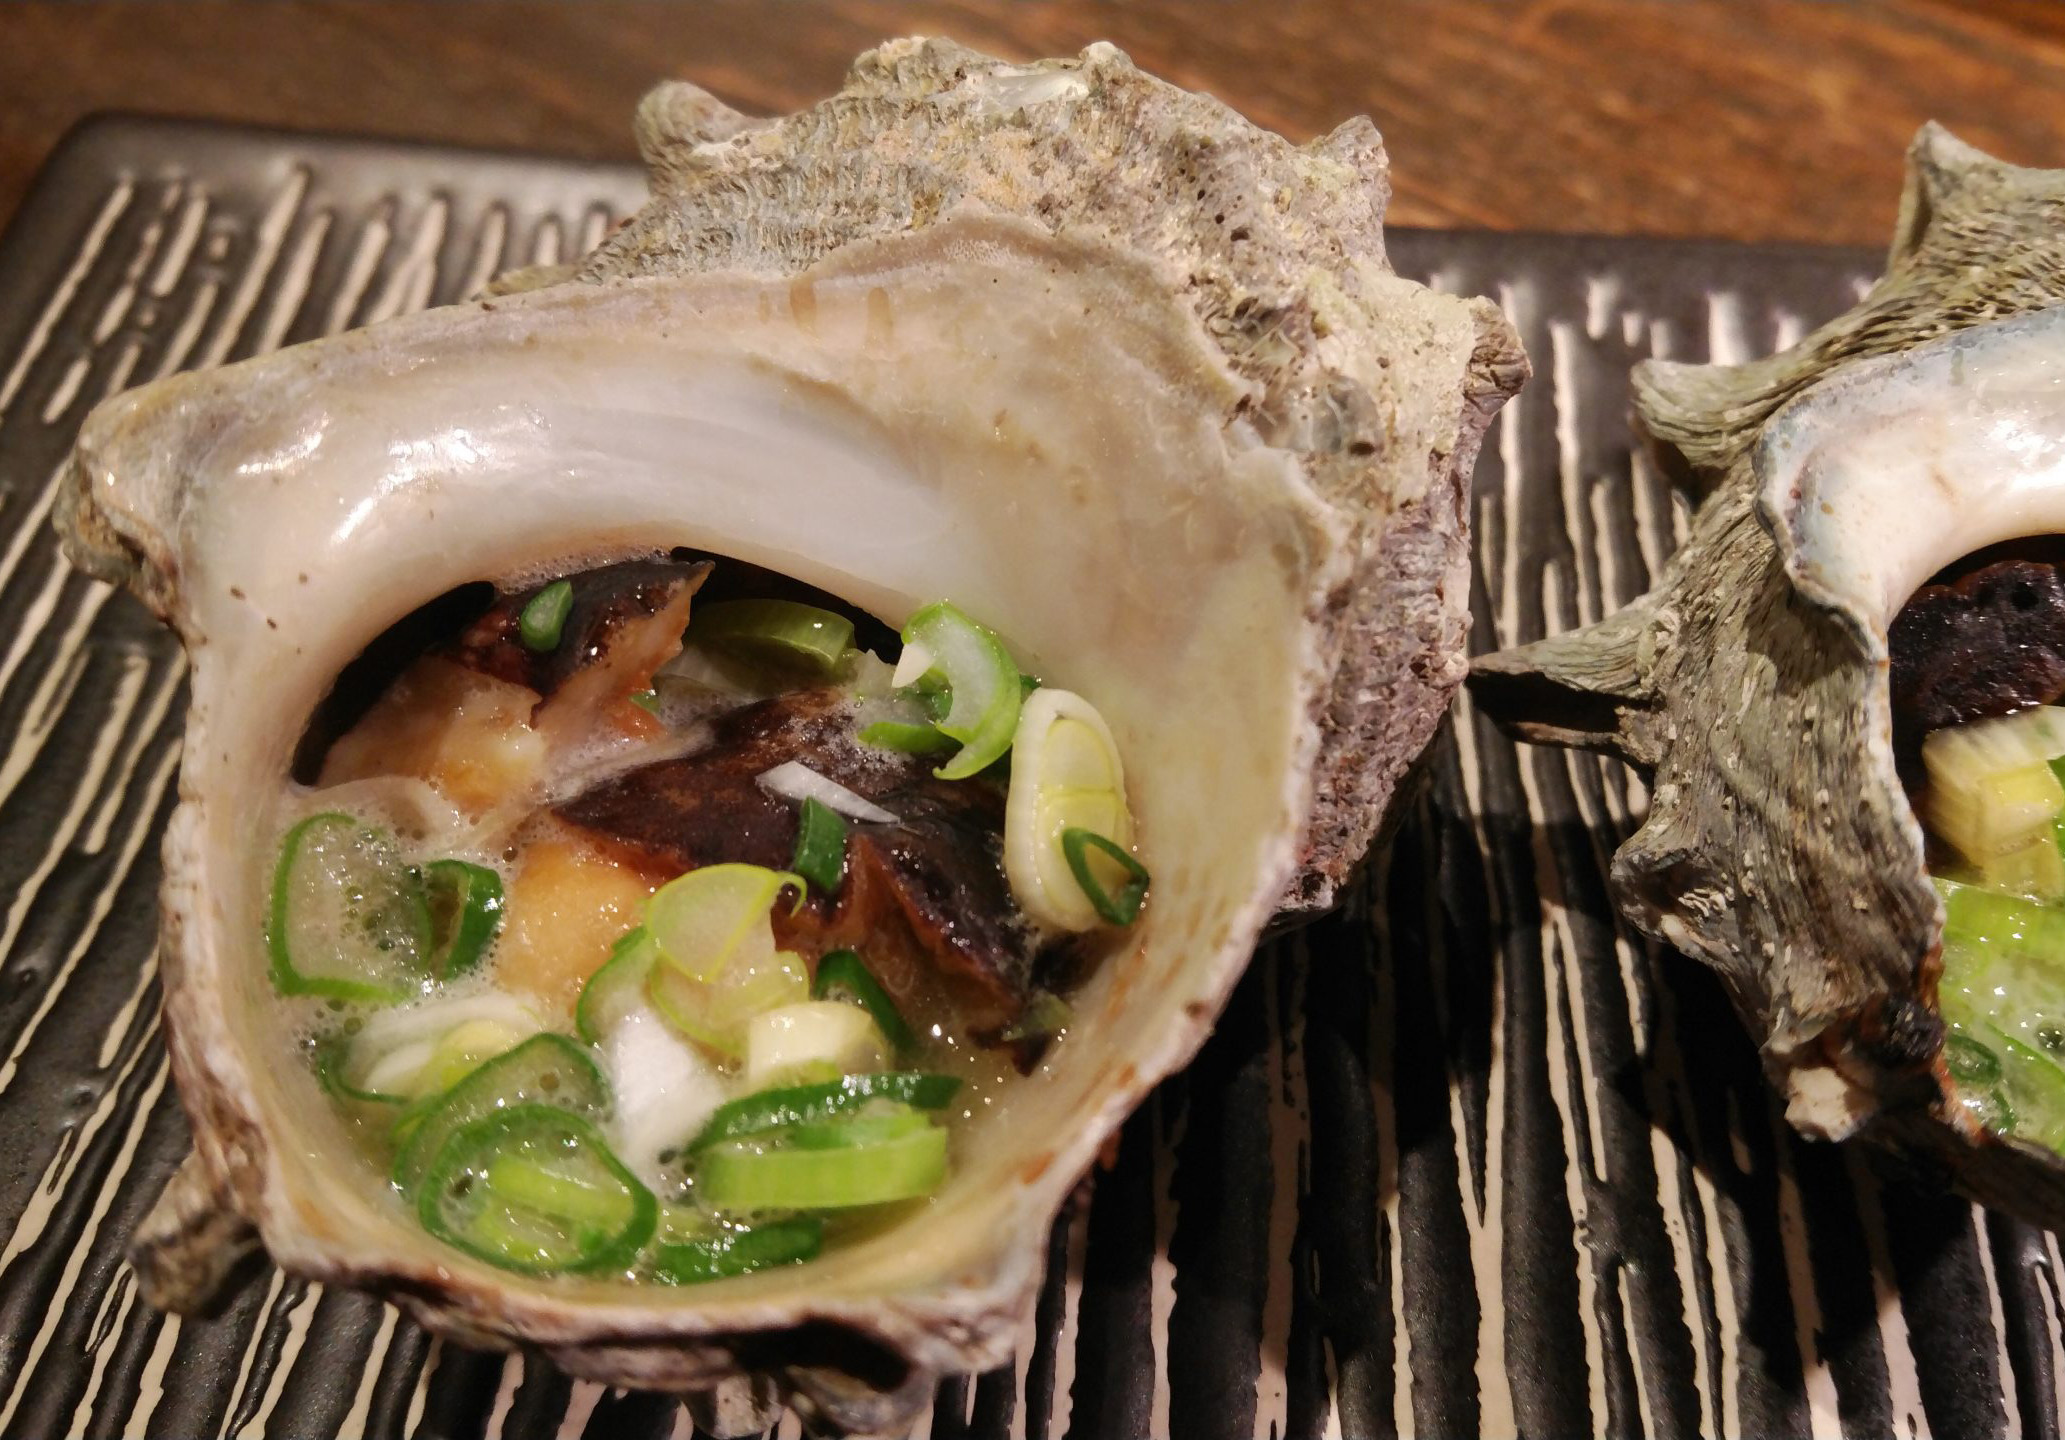 サザエの壺焼き ネギ醤油バター 海の恵み 食の底力 Japan 公式レシピサイト